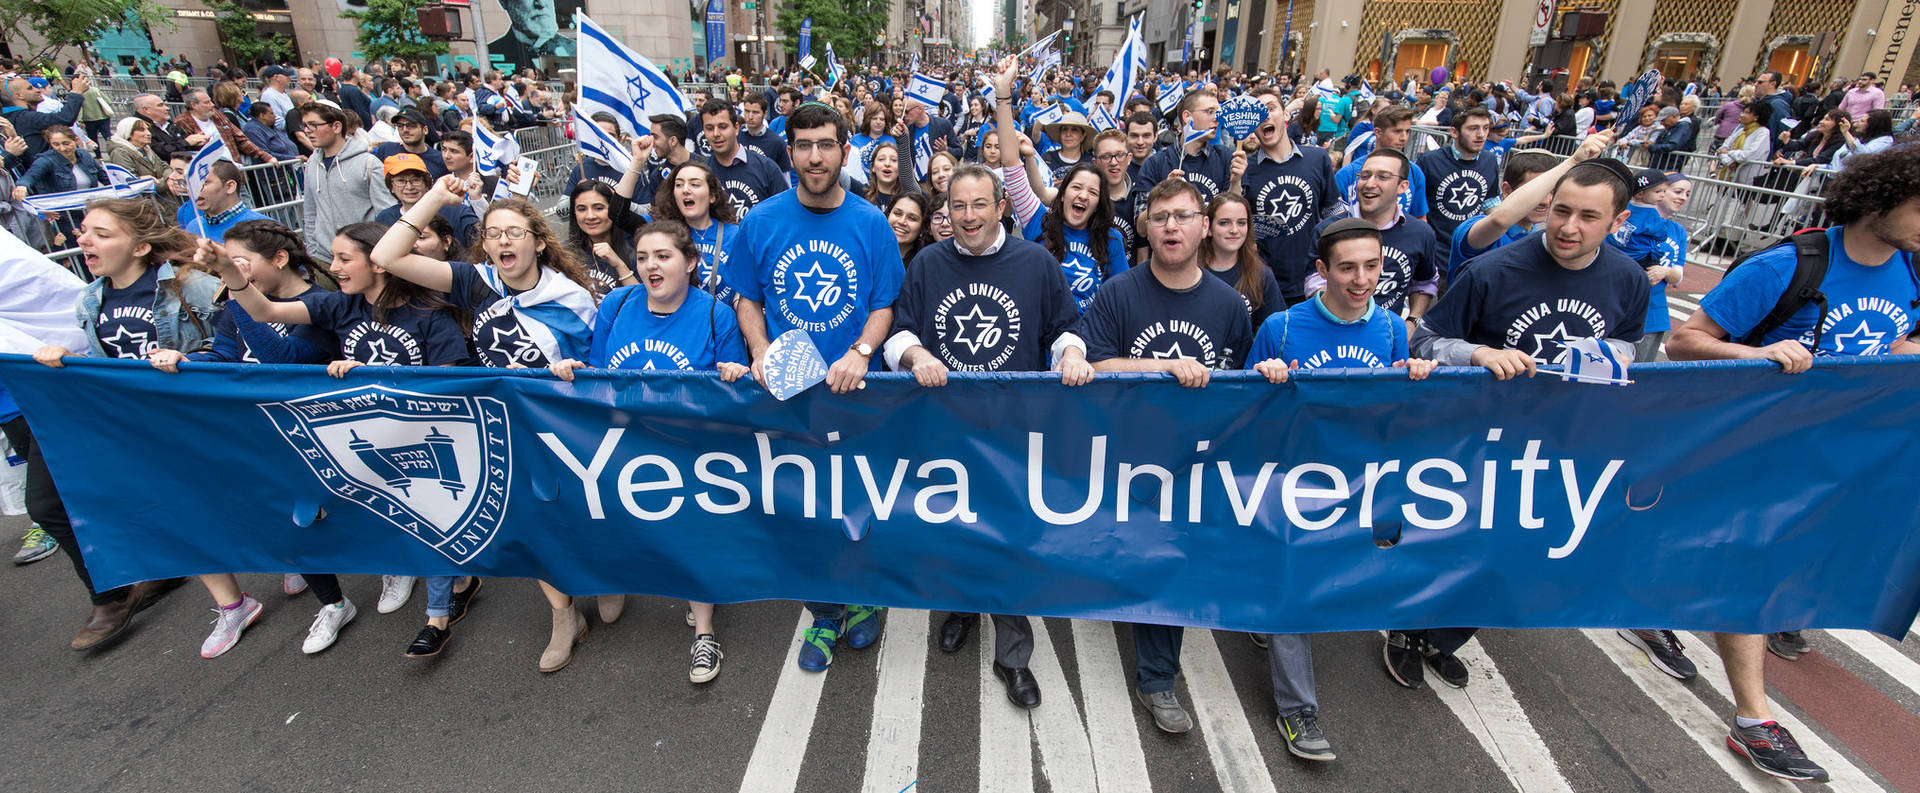 Yeshiva University Wallpaper